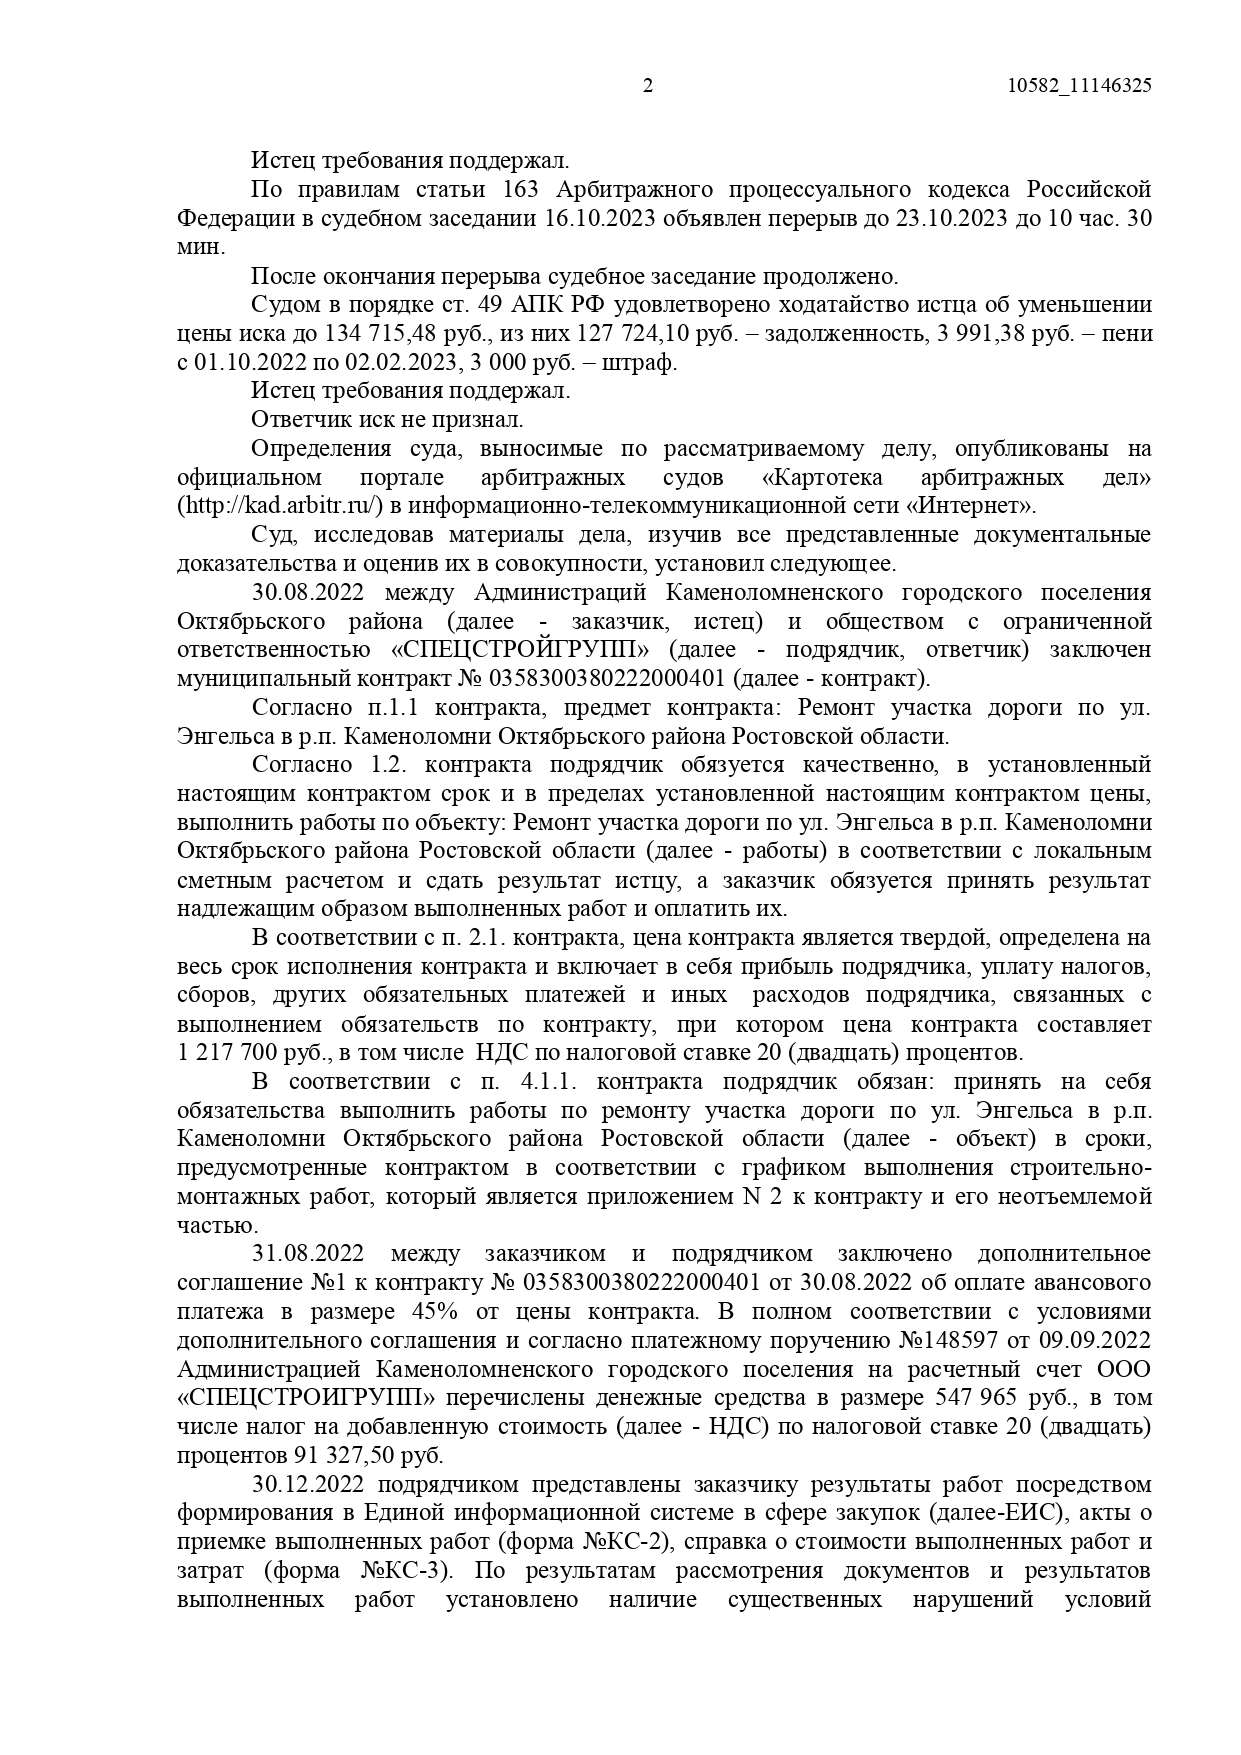 Арбитражный суд Ростовской области вынес решение по делу №А53-4111/2023